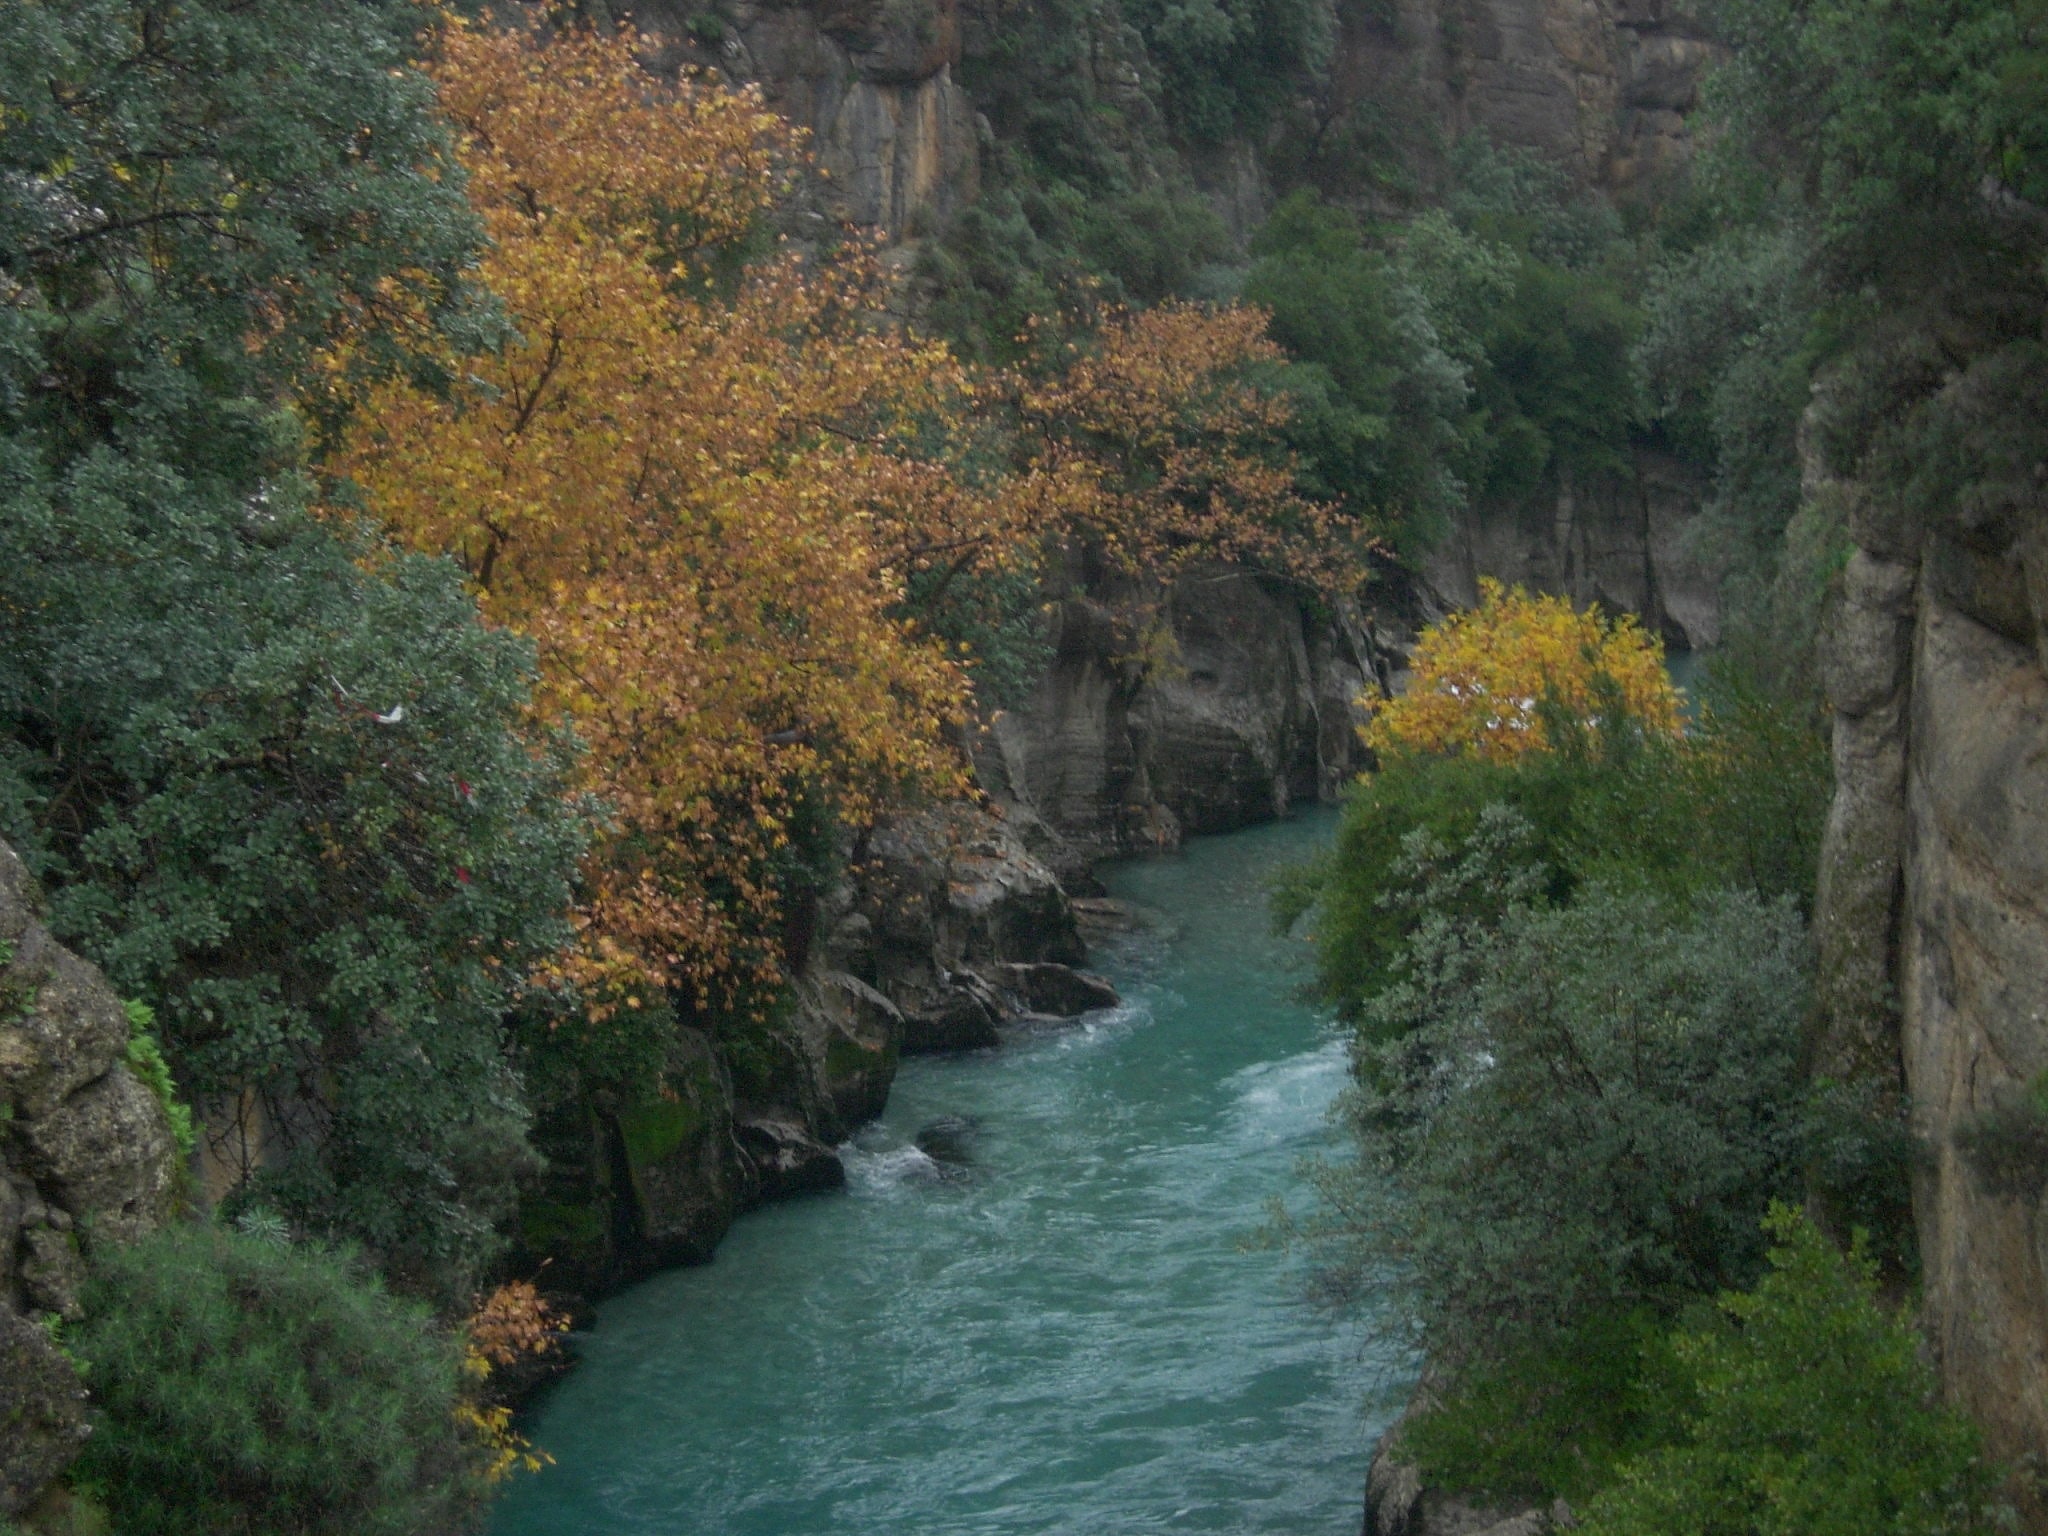 Köprülü Canyon, Turkey